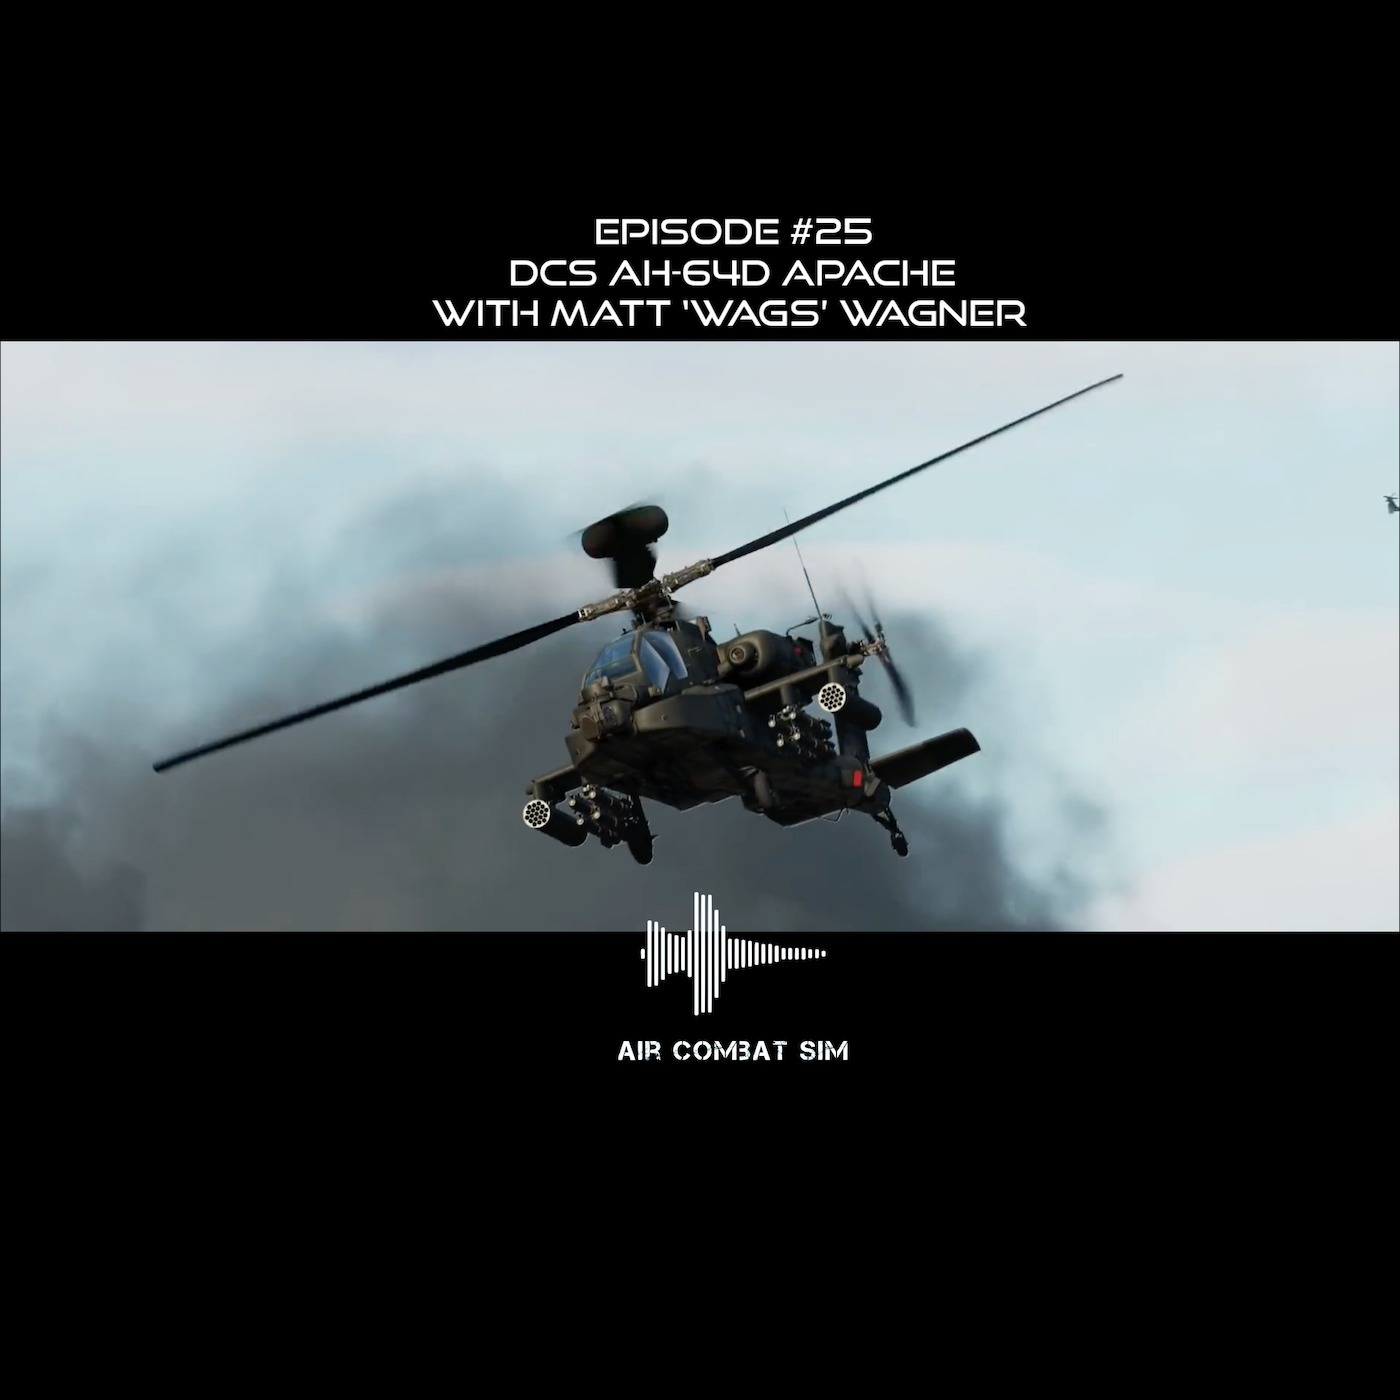 Air Combat Sim Podcast - Episode #25: DCS AH-64D with Matt "Wags" Wagner